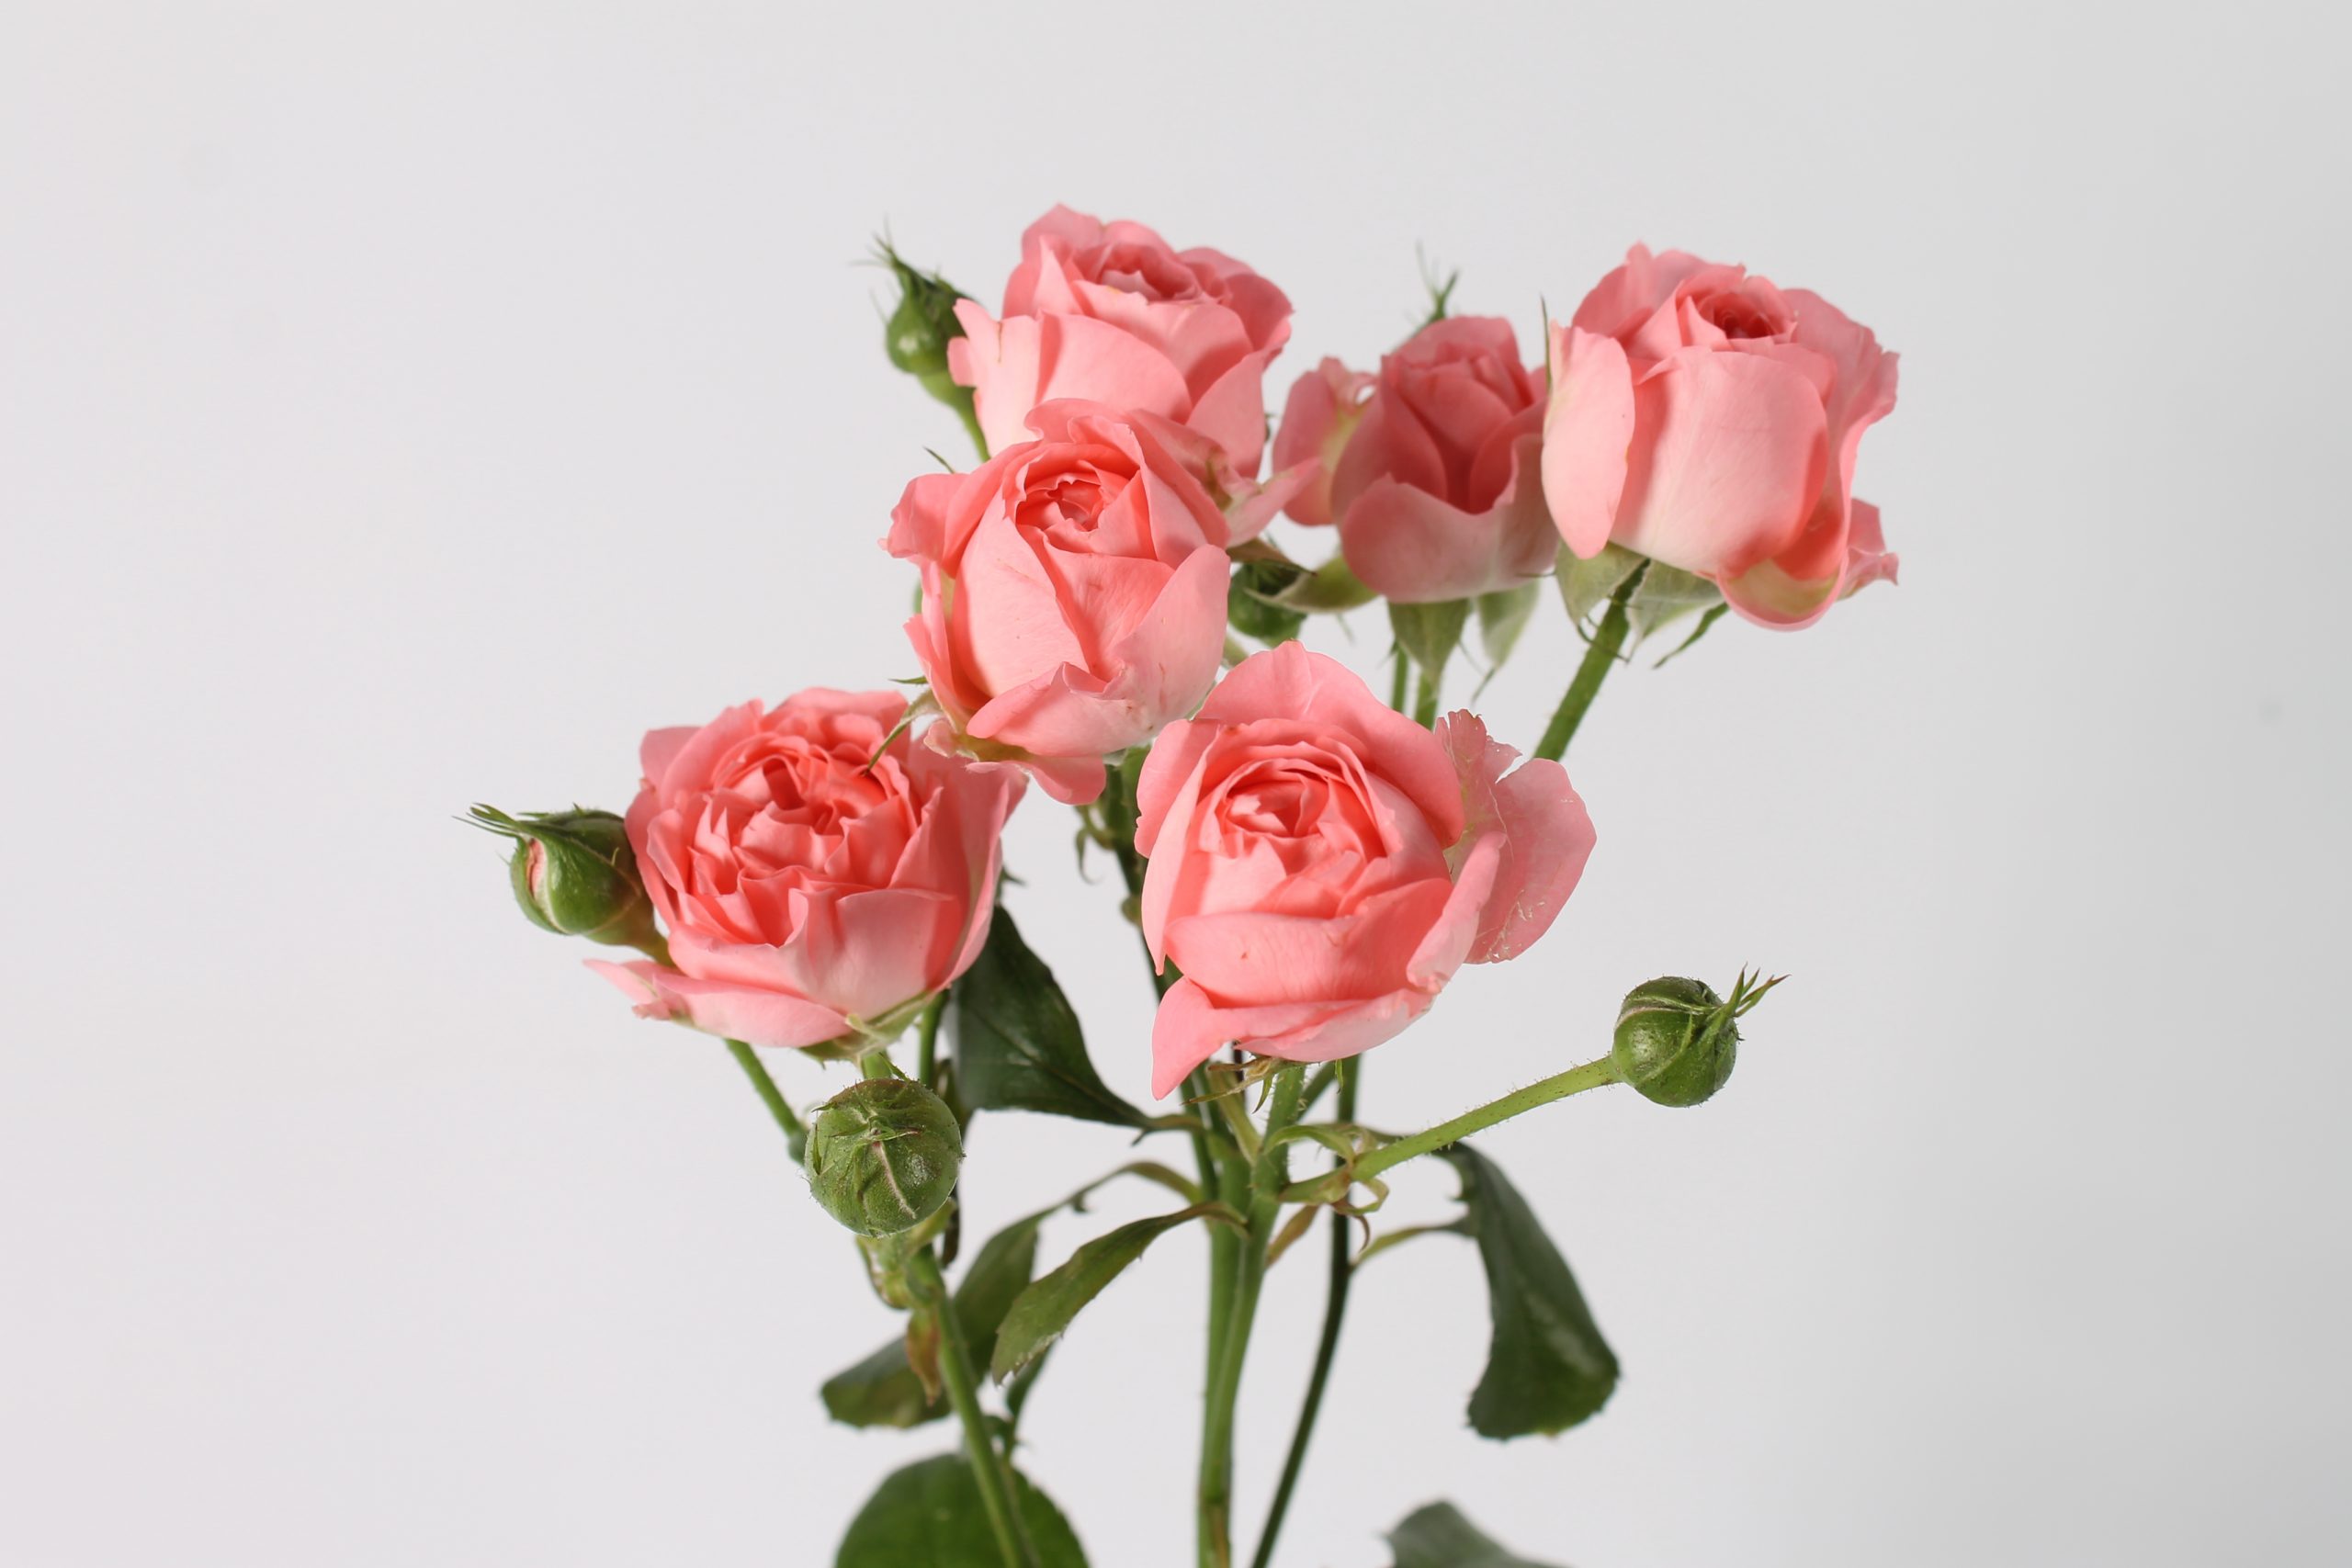 Femke trosroos van Seters Roses rozenkwekerij